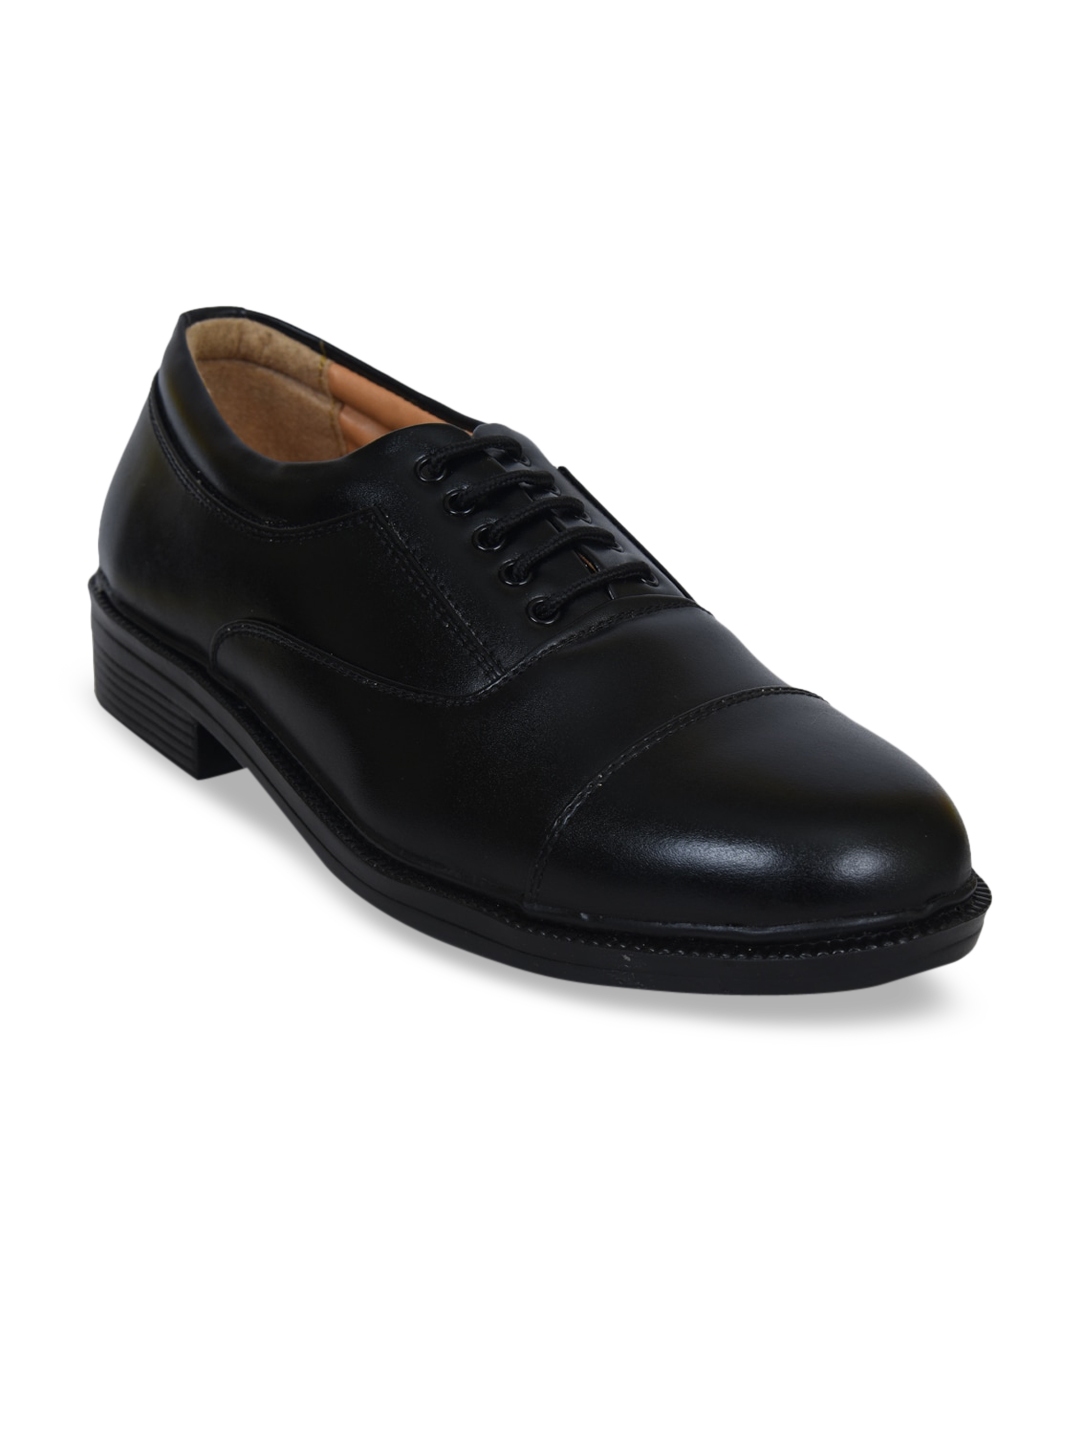 Buy Ajanta Men Black Solid Formal Derbys - Formal Shoes for Men ...